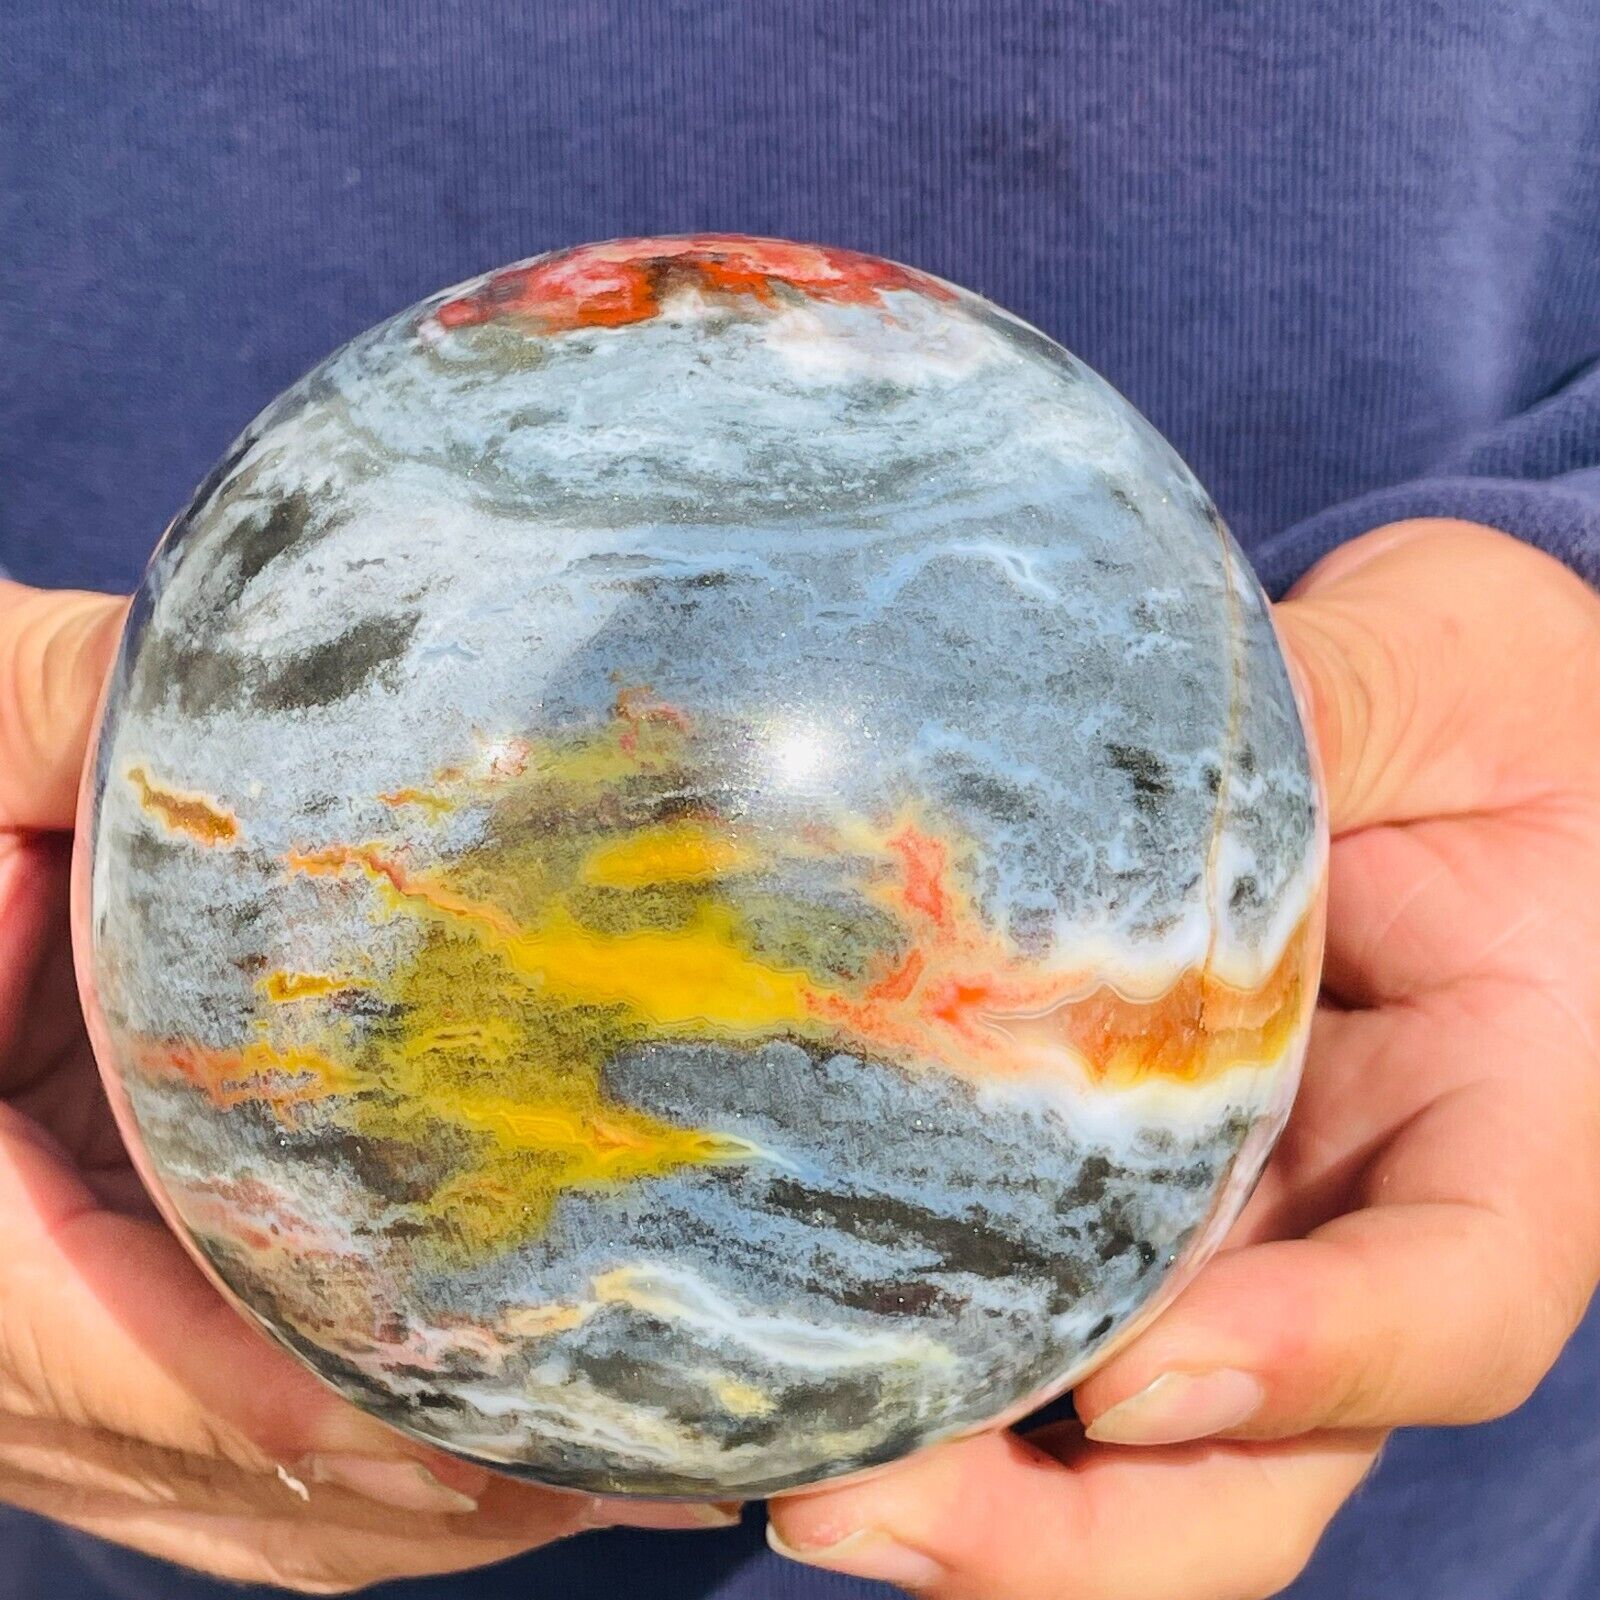 1810g Large Natural Colourful Ocean Jasper Sphere Quartz Crystal Ball Specimen